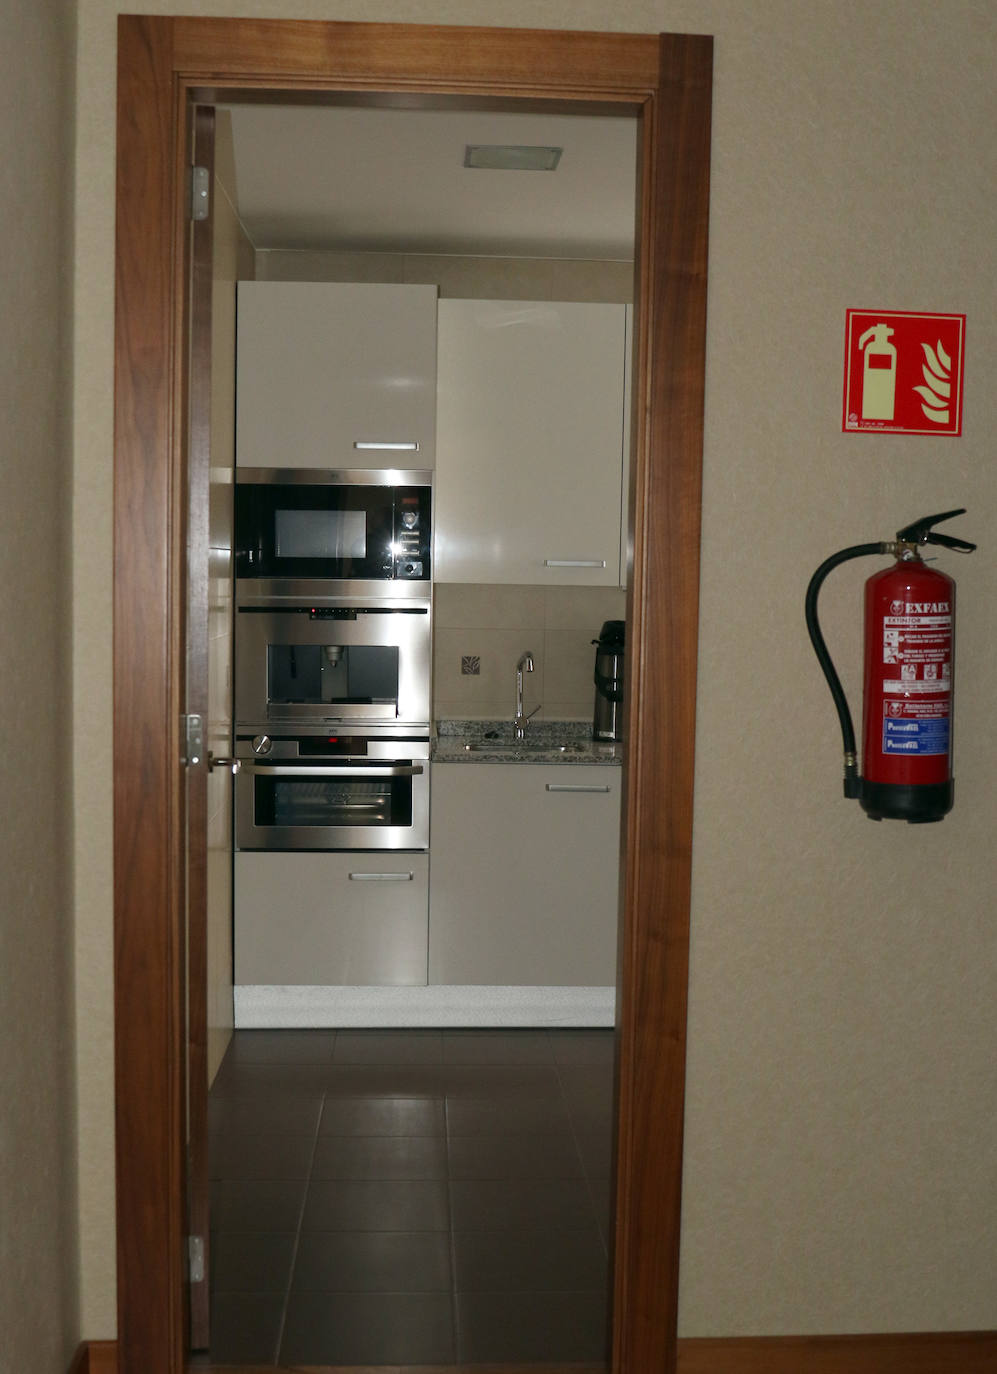 Fotos: Así es el apartamento de las Cortes